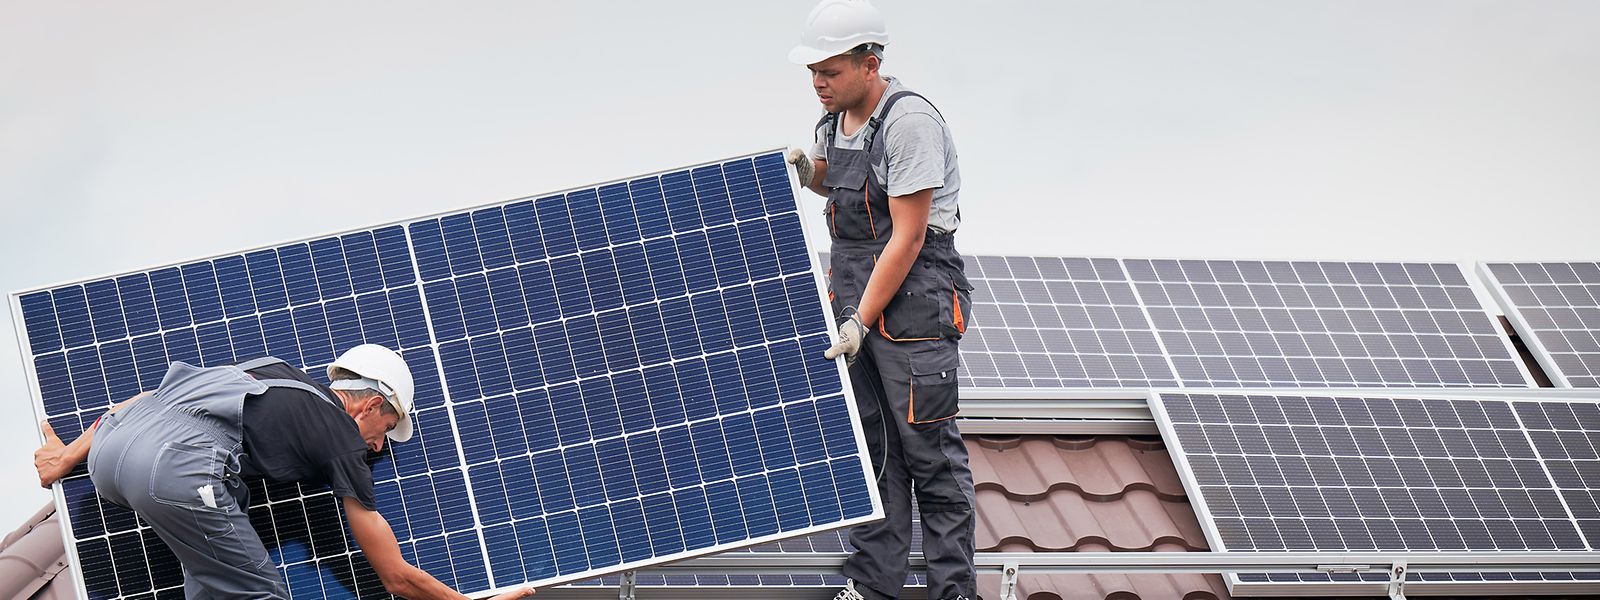 Fotovoltaikanlagen liefern günstigen Strom, müssen in der Regel aber genehmigt werden.